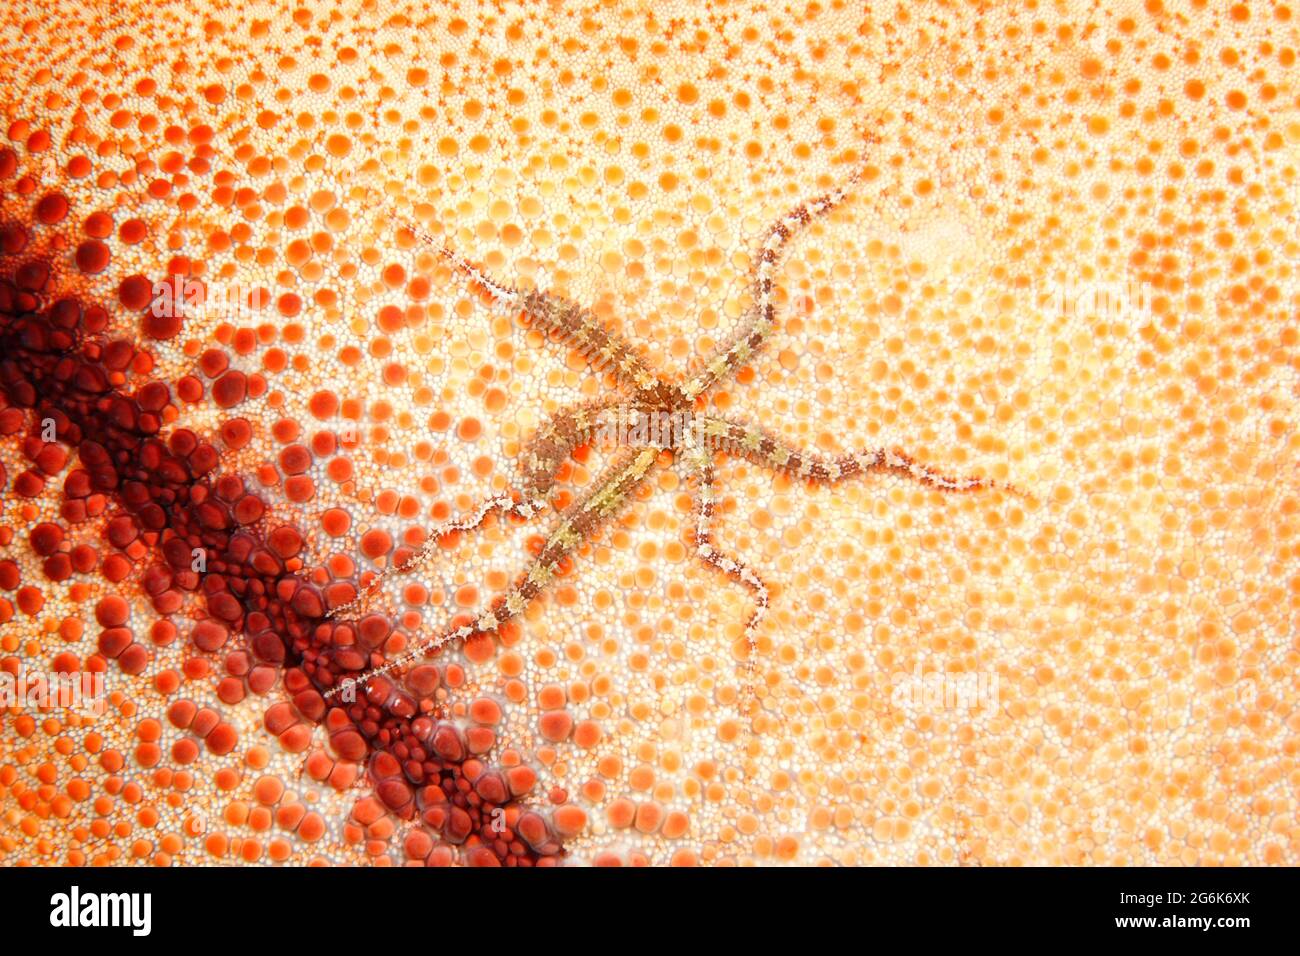 Fragile Star, Ophiactis sp. Sur le dessous d'une étoile de mer. Tulamben, Bali, Indonésie. Mer de Bali, Océan Indien Banque D'Images